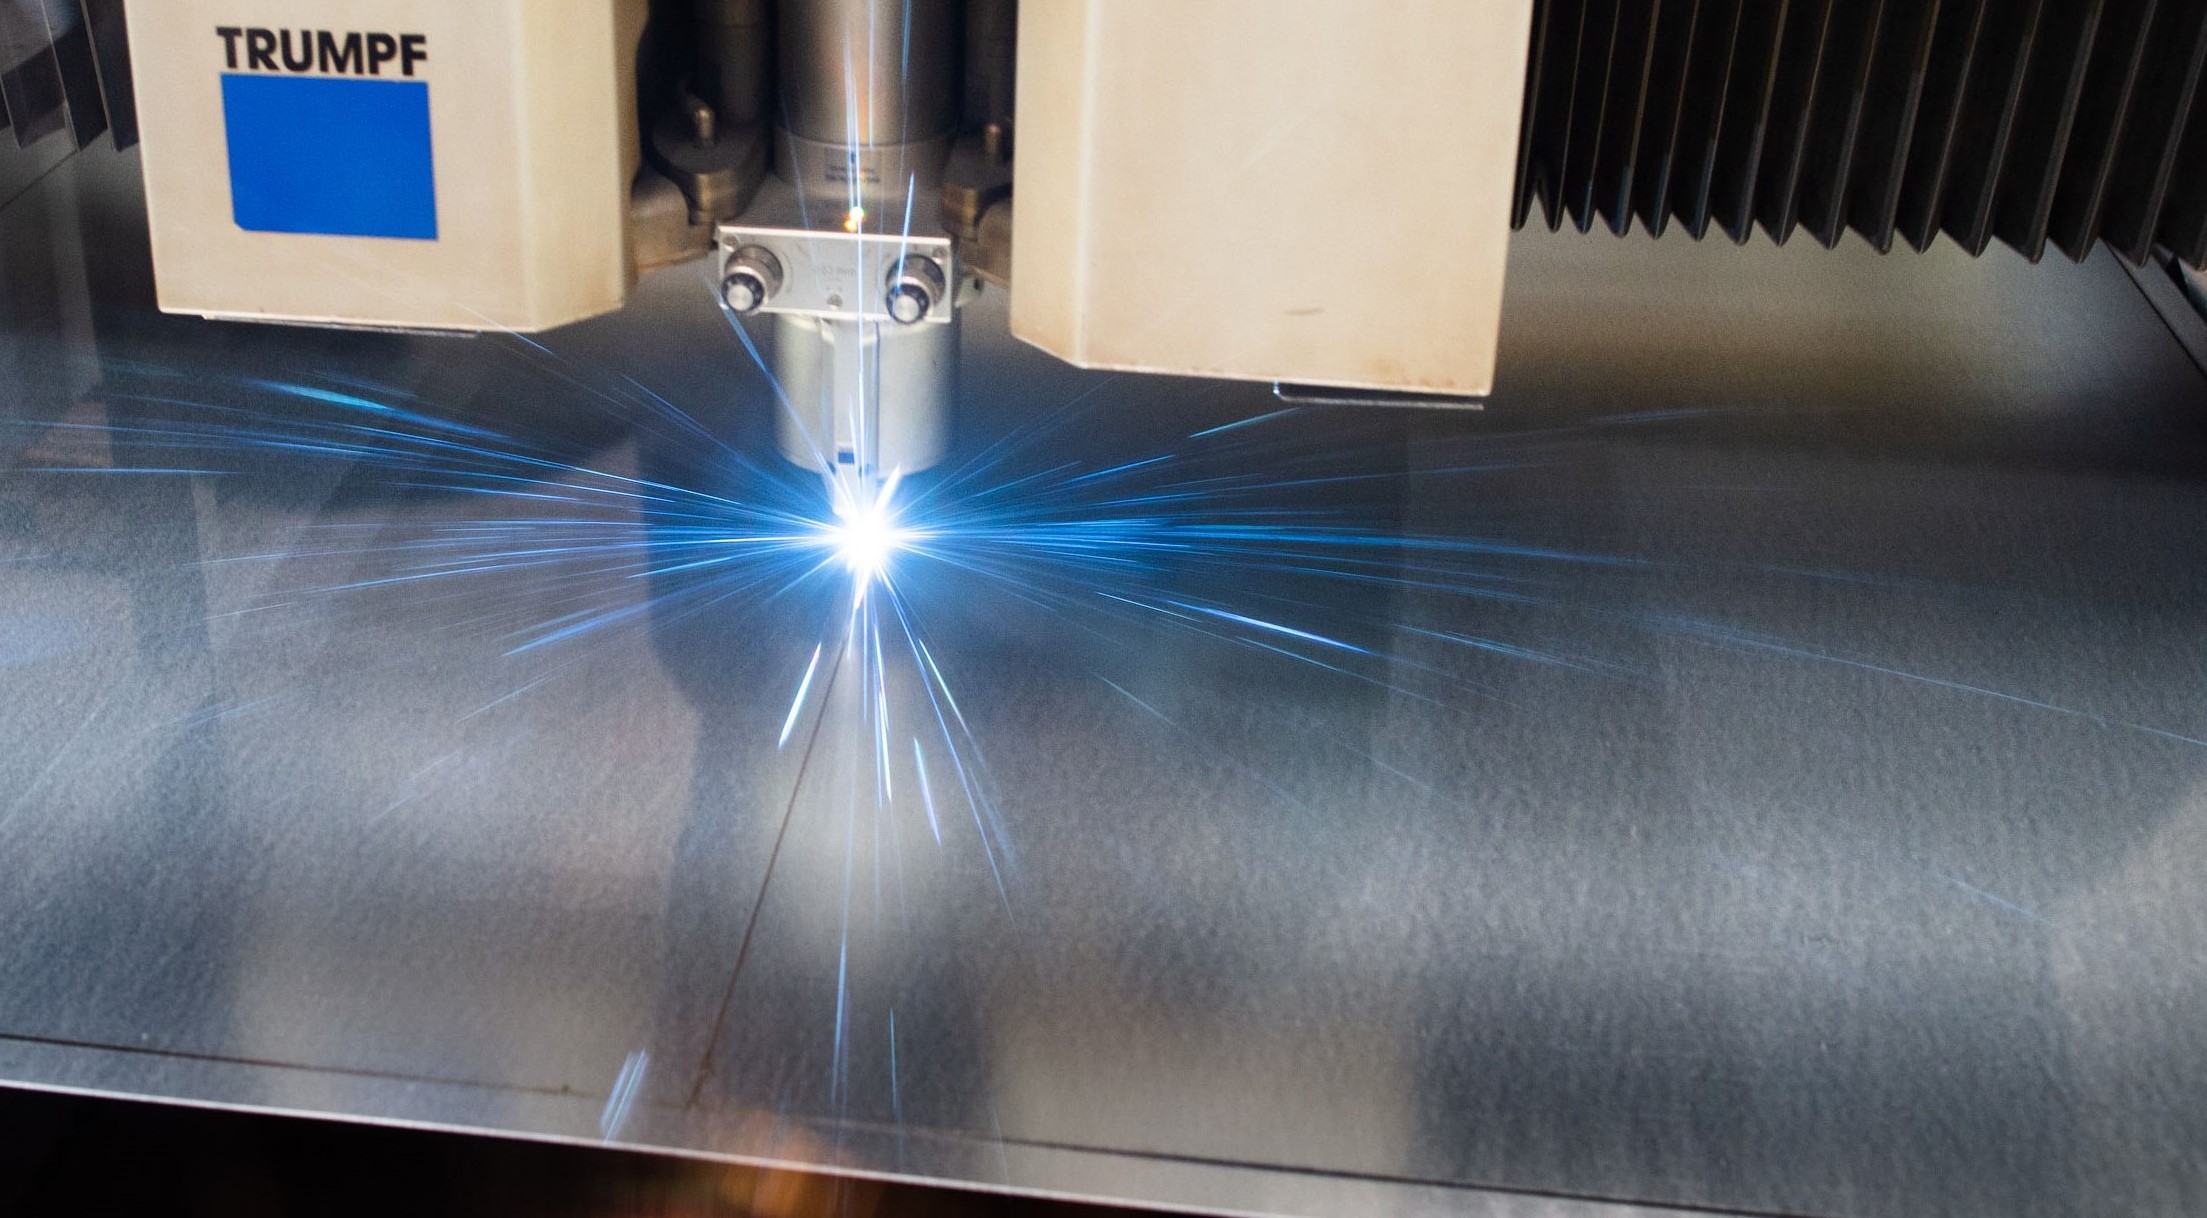 Dieses Bild zeigt einen Laser, der auf eine Metallplatte gerichtet ist und blau leuchtet.